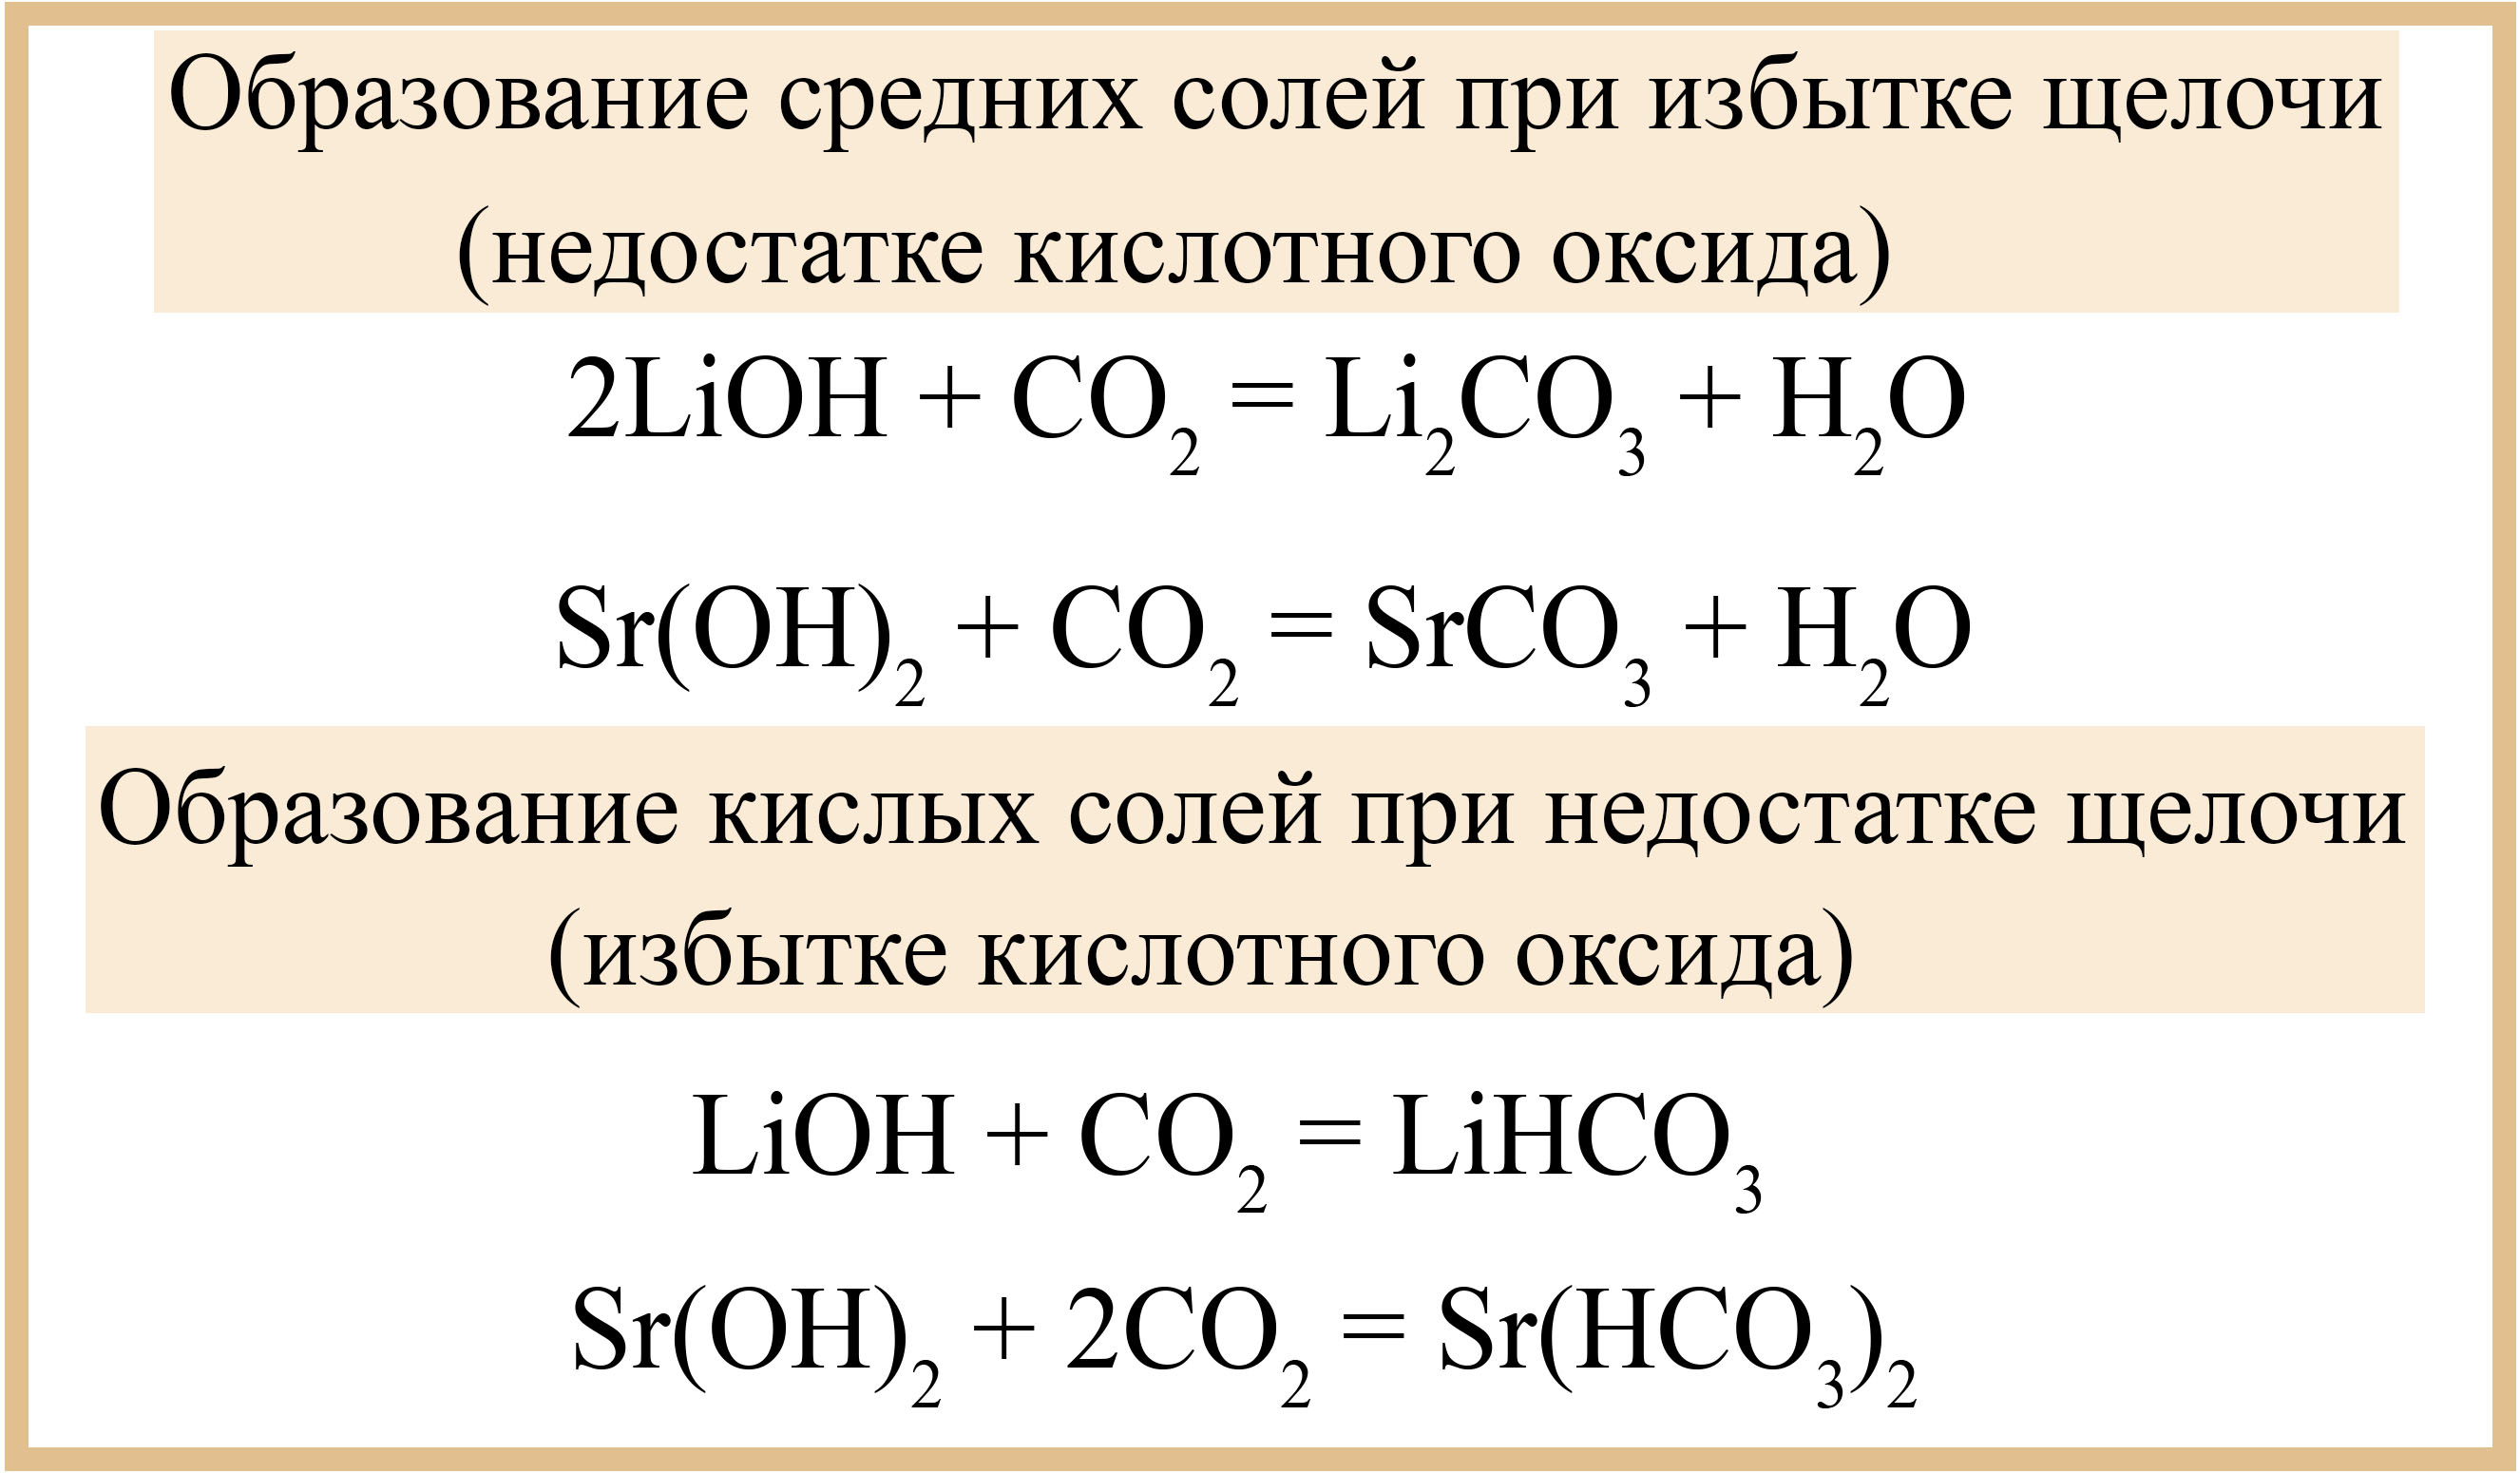 Кислотный оксид щелочь равно. Образование кислой соли. Взаимодействие оксидов с кислотами и щелочами. Взаимодействие оснований с кислотными оксидами. Взаимодействие щелочей с кислотами.